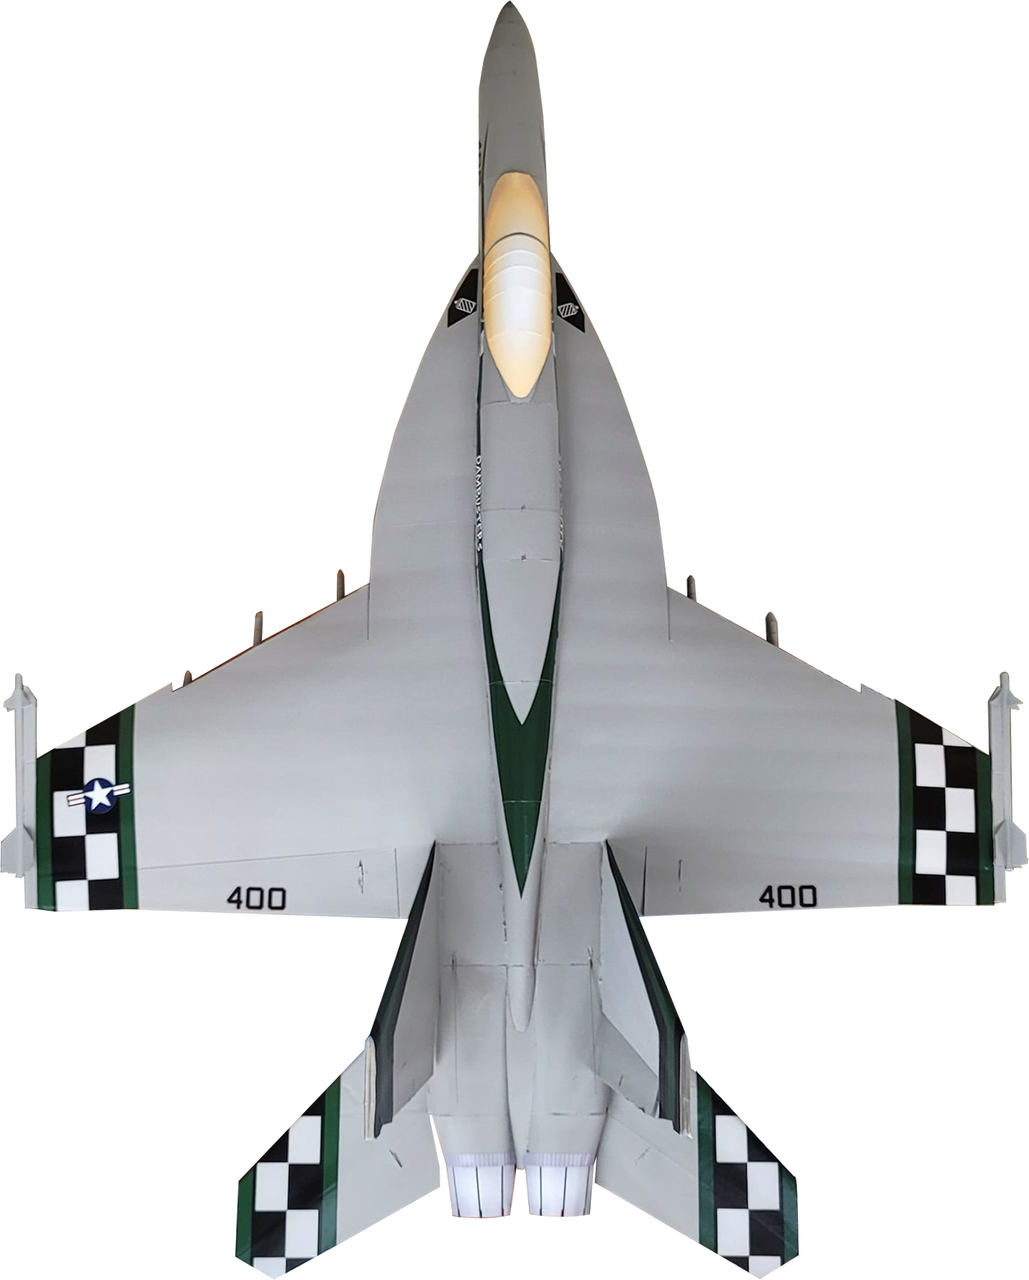 SkyFX Master Series F-18 Super Hornet Flite Test